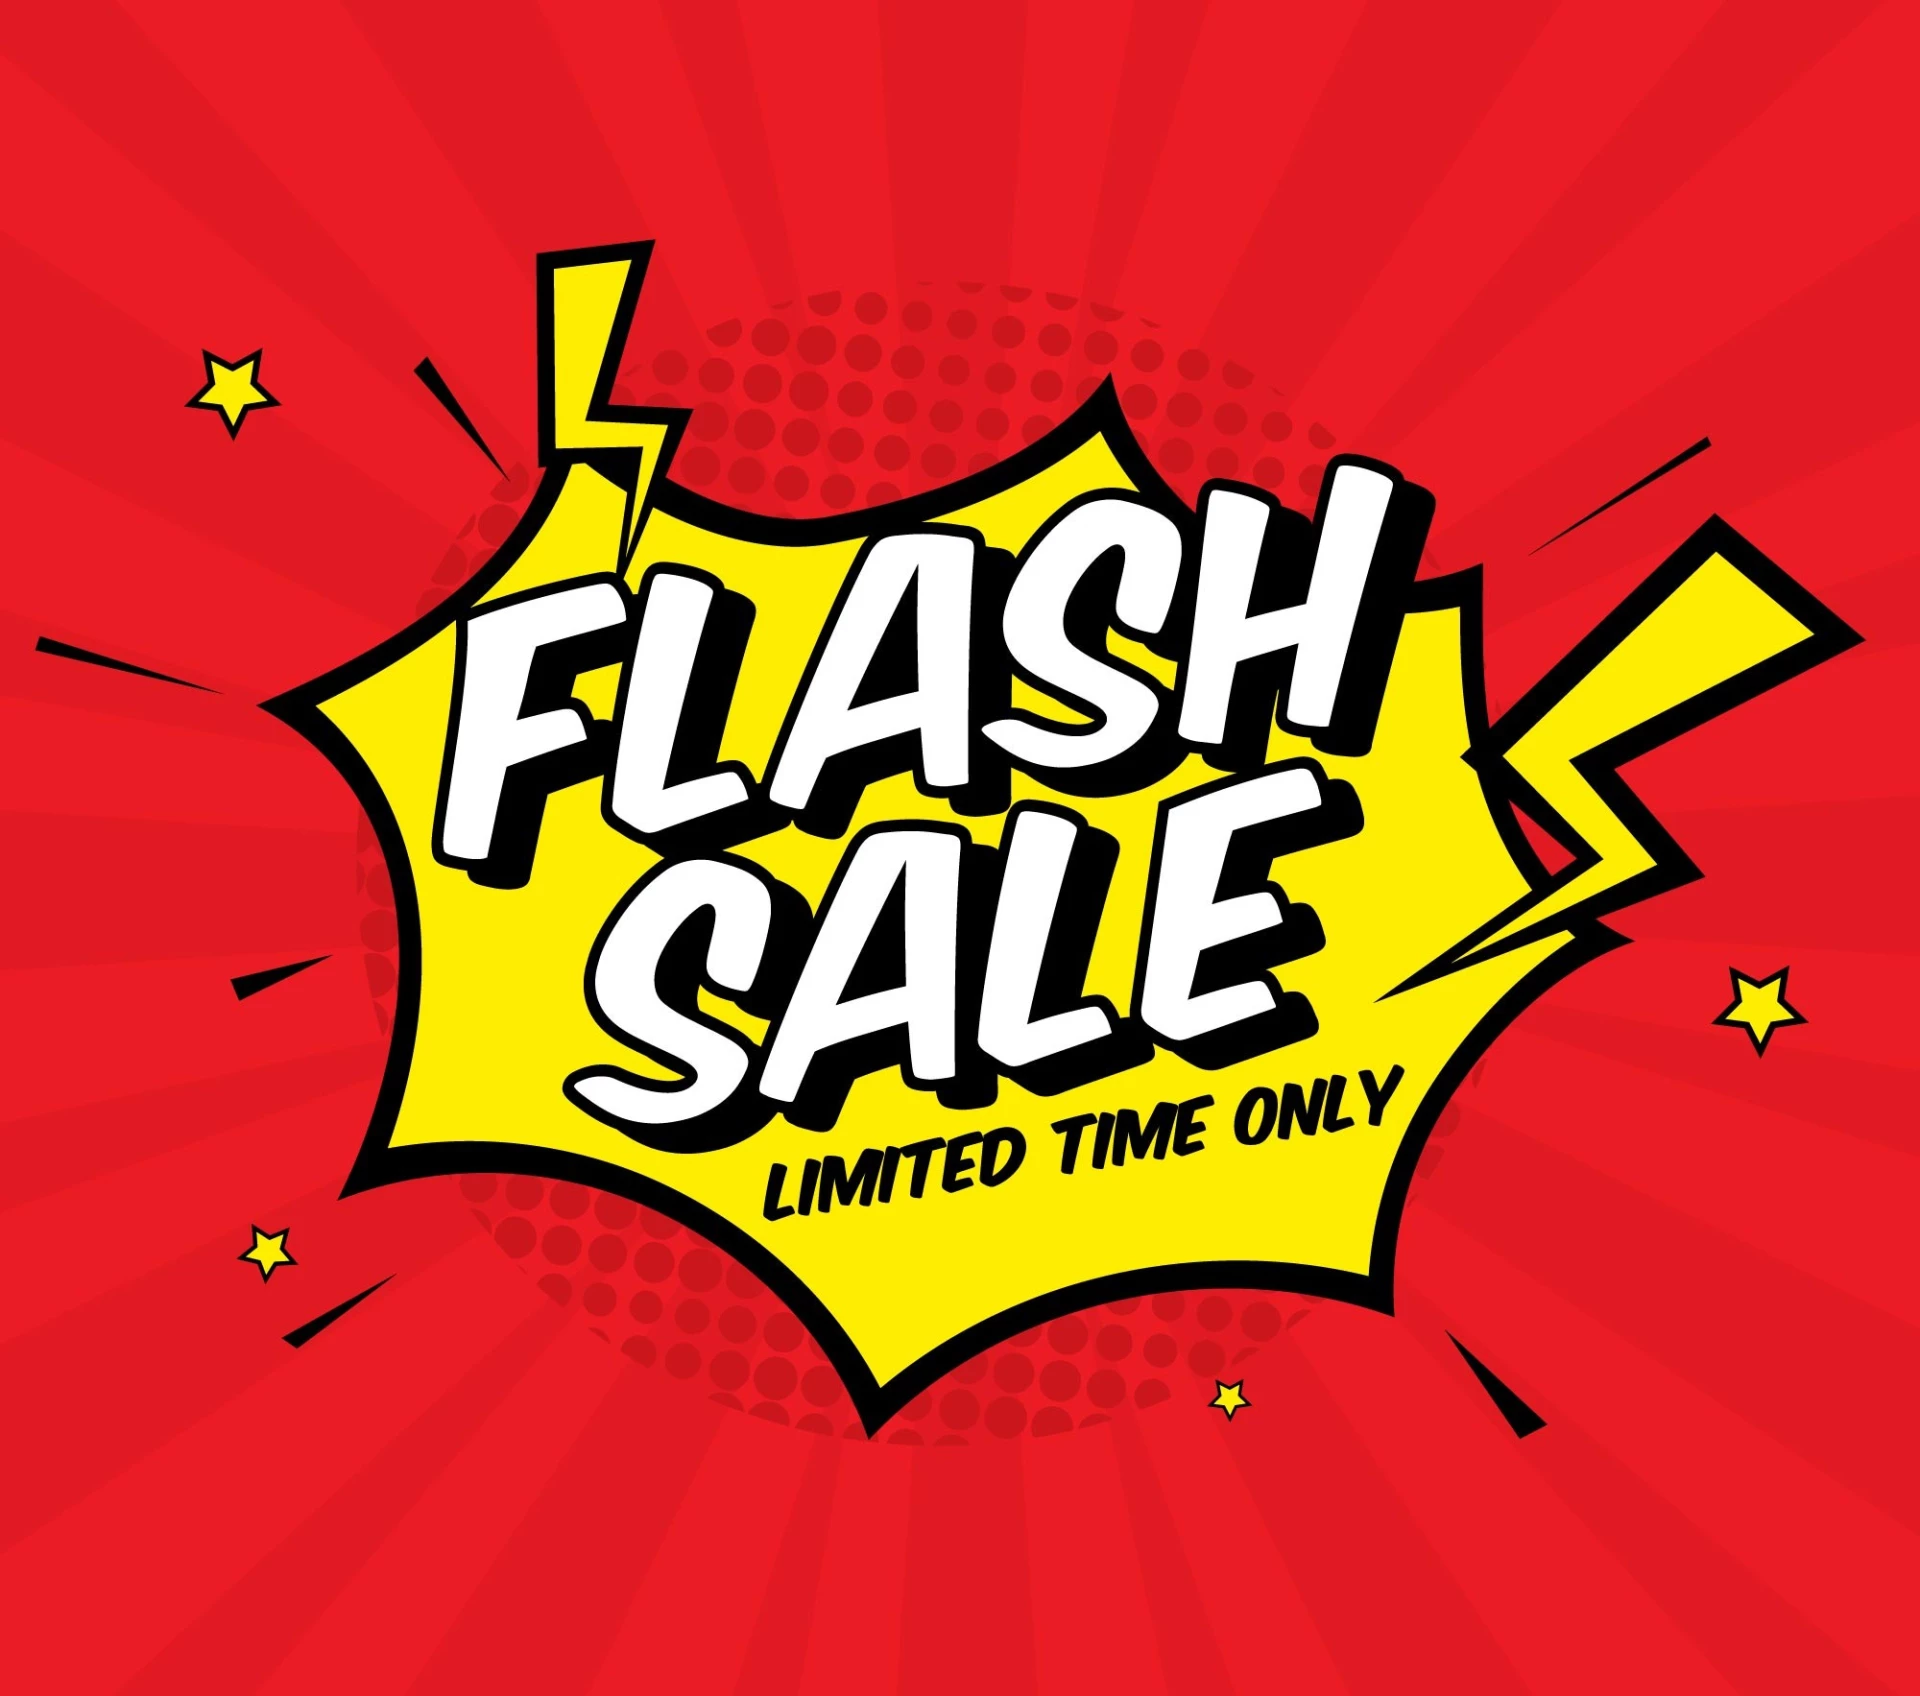 Weekend Flash Sale